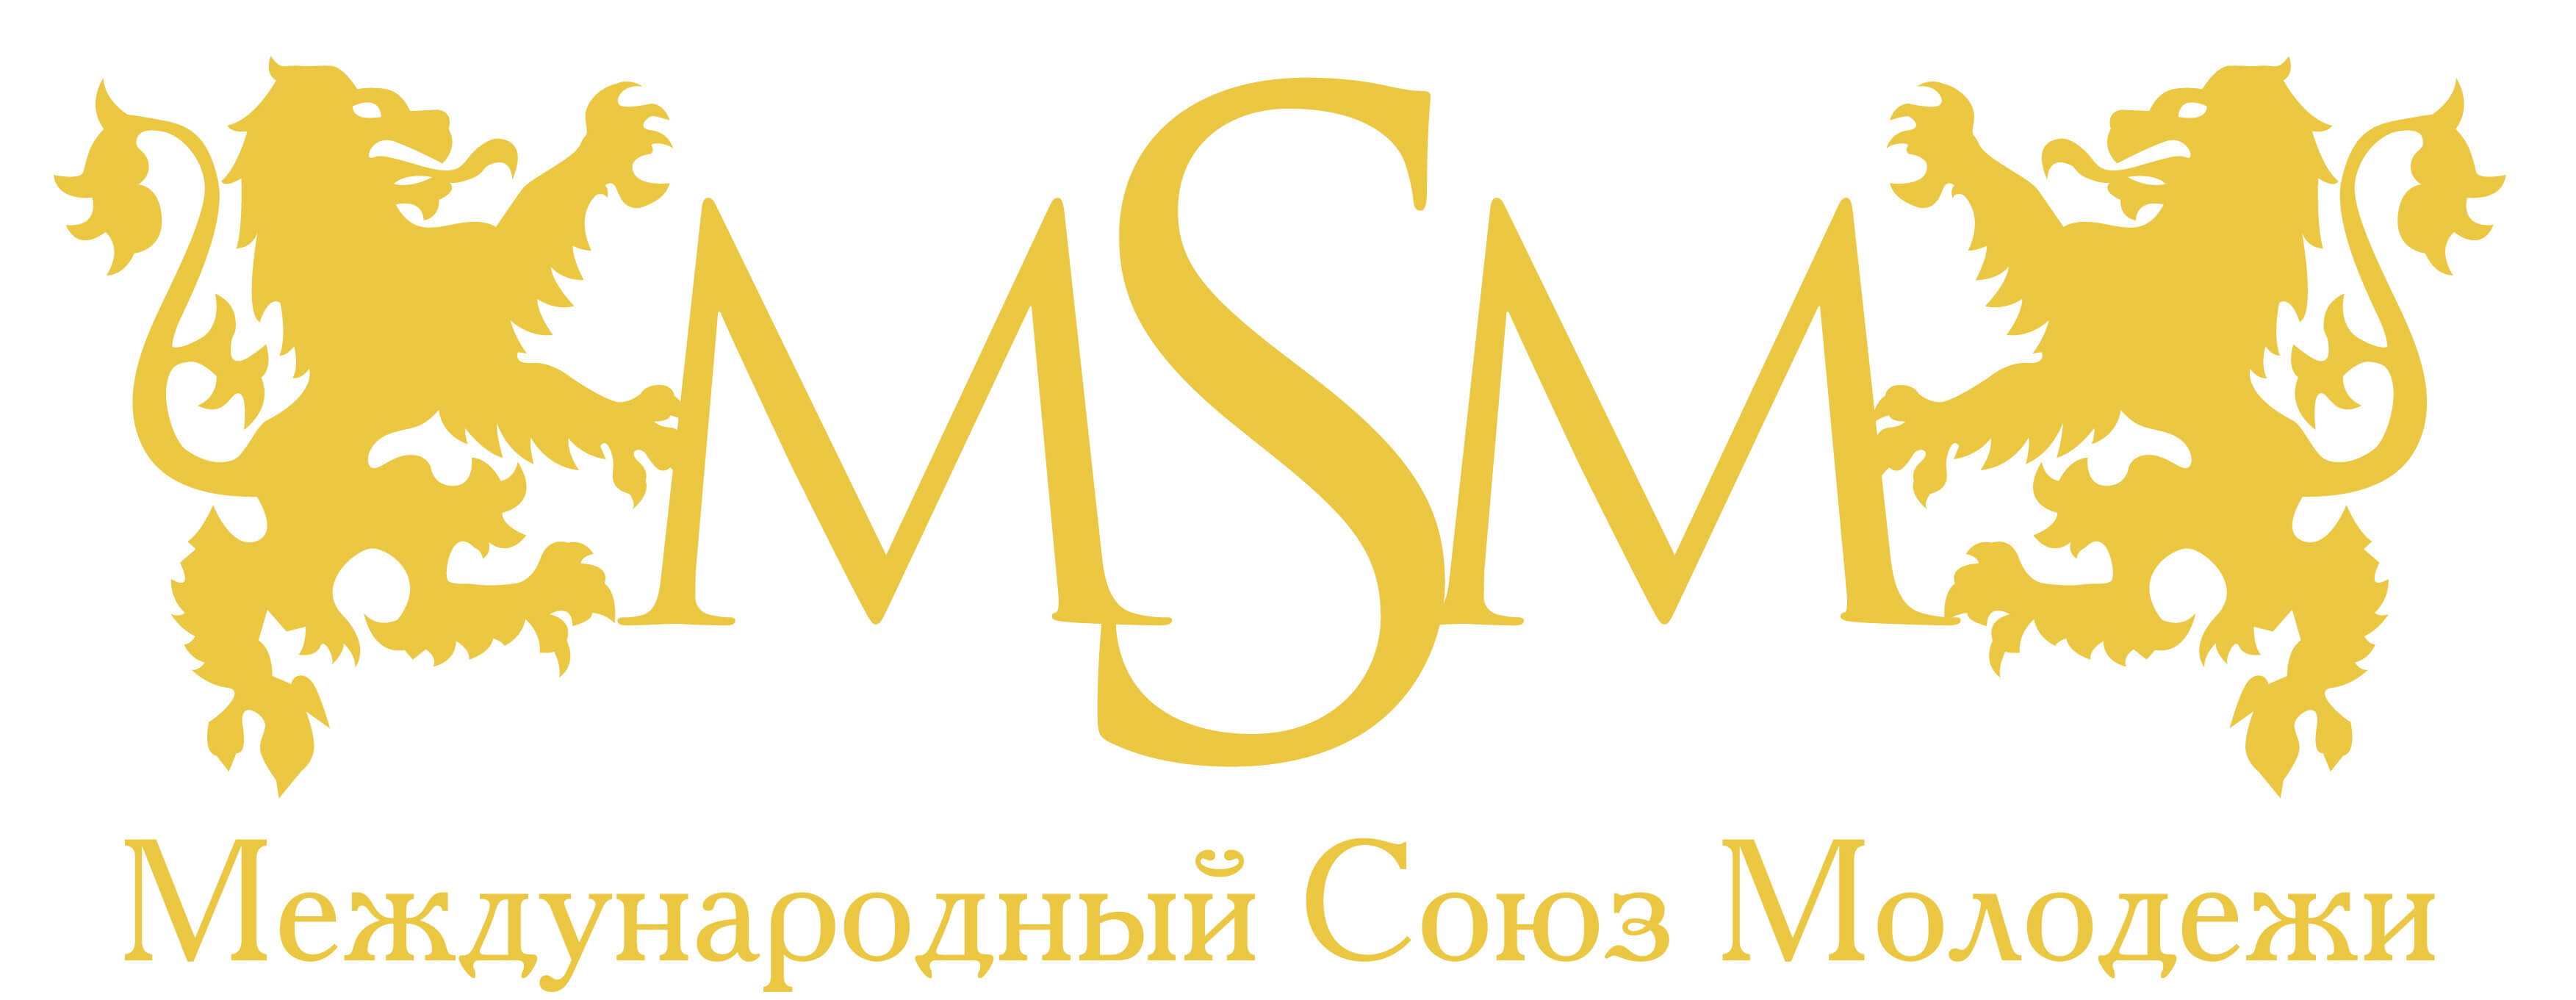 логотип мсм msmstudy